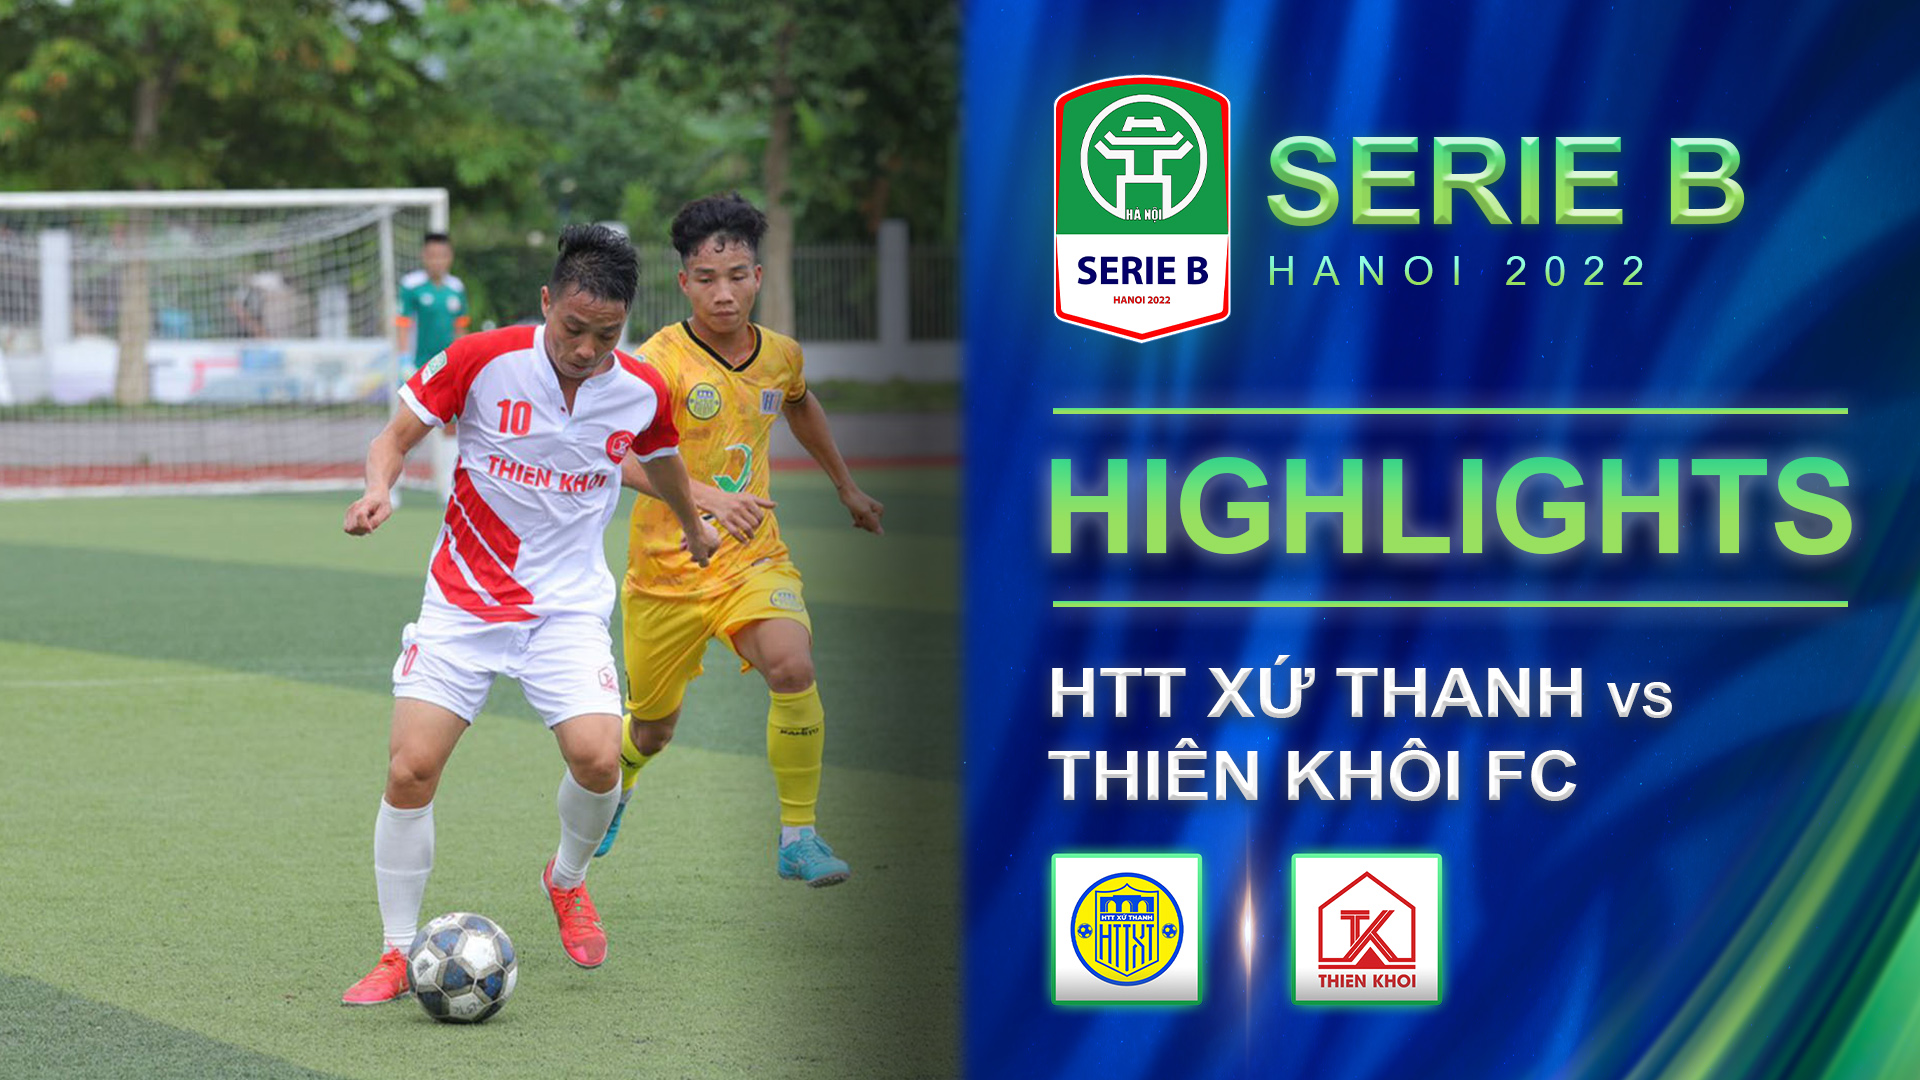 HTT Xứ Thanh - Thiên Khôi FC | Trận cầu giàu cảm xúc - Highlights Hà Nội Serie  2022